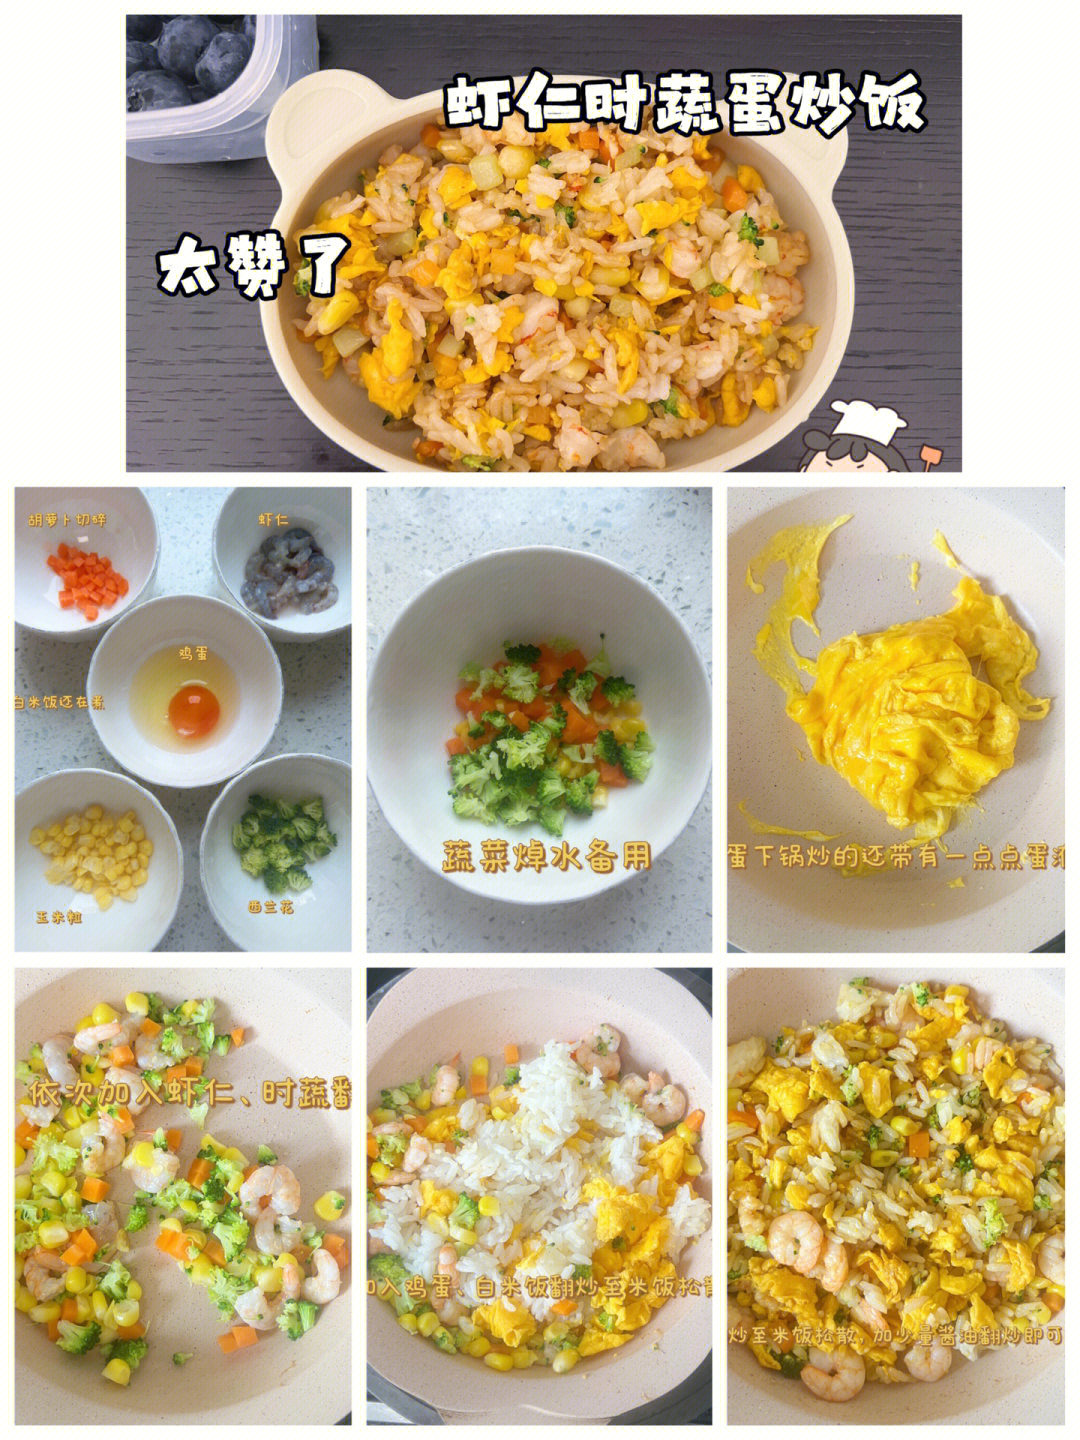 蛋炒饭步骤教程图片